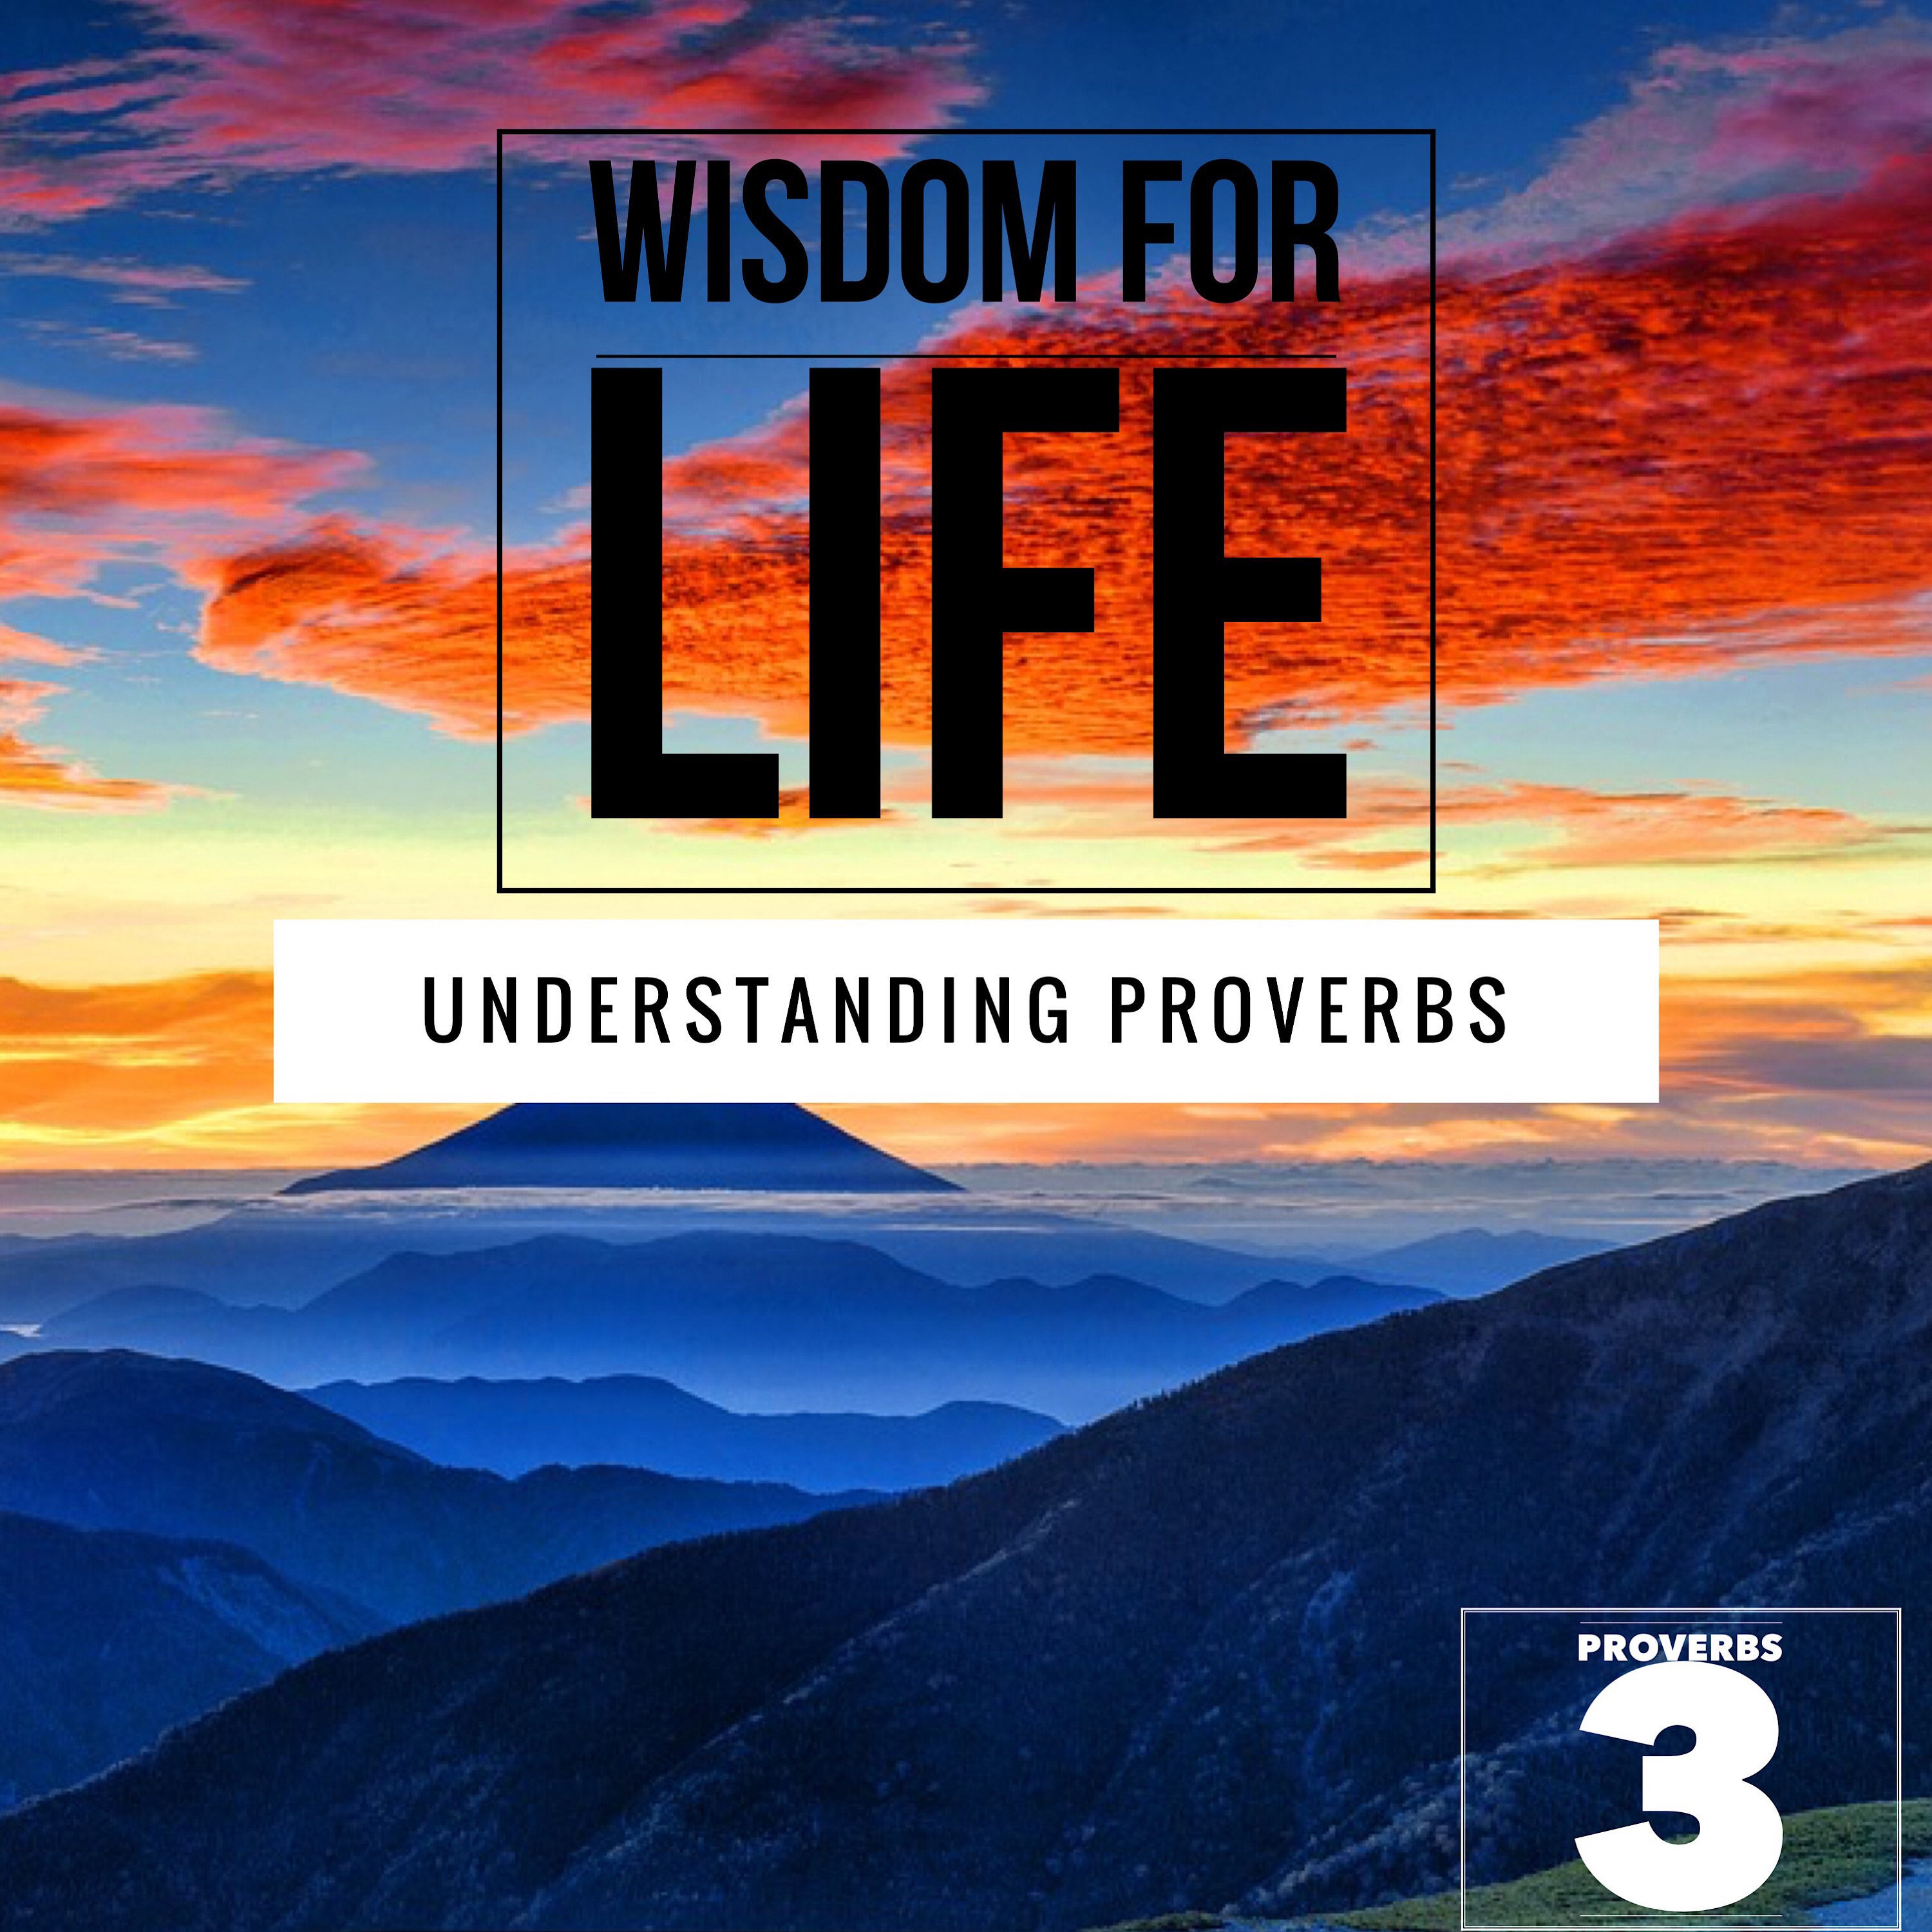 UNDERSTANDING PROVERBS 3